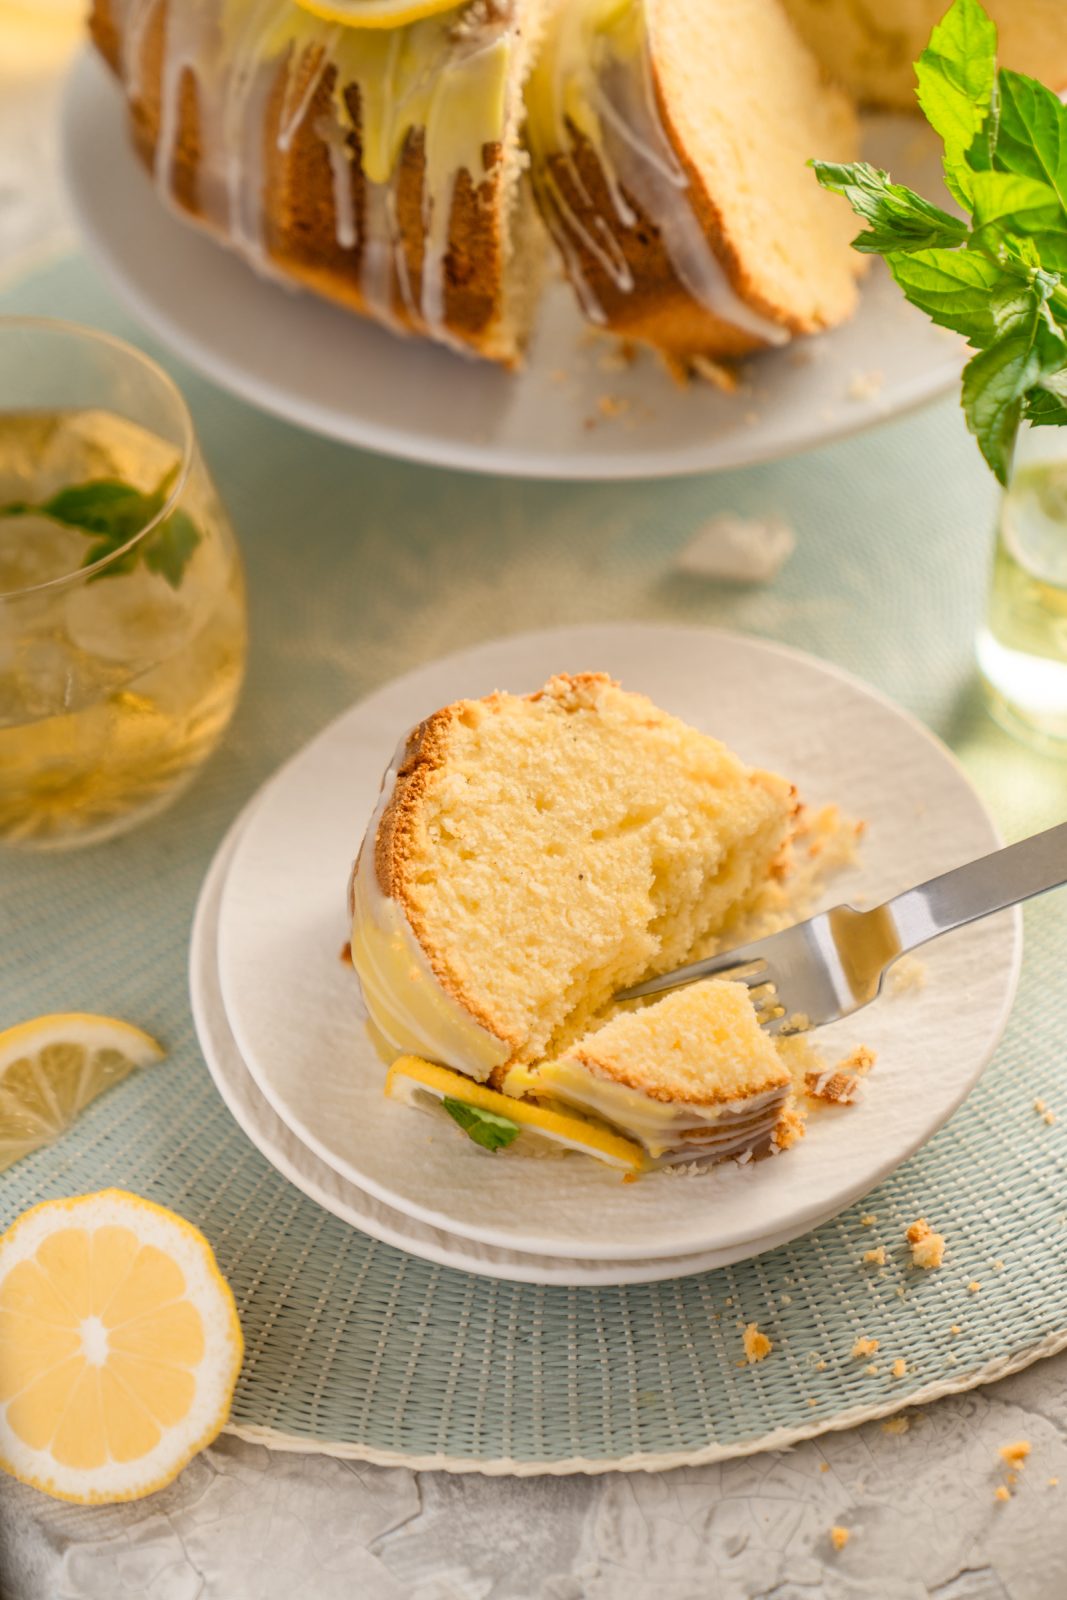 Rezept für saftiger Zitronen-Gugl. Einer unserer Favoriten an "trockenen" Kuchen. Schnell und easy gemacht und super saftig!